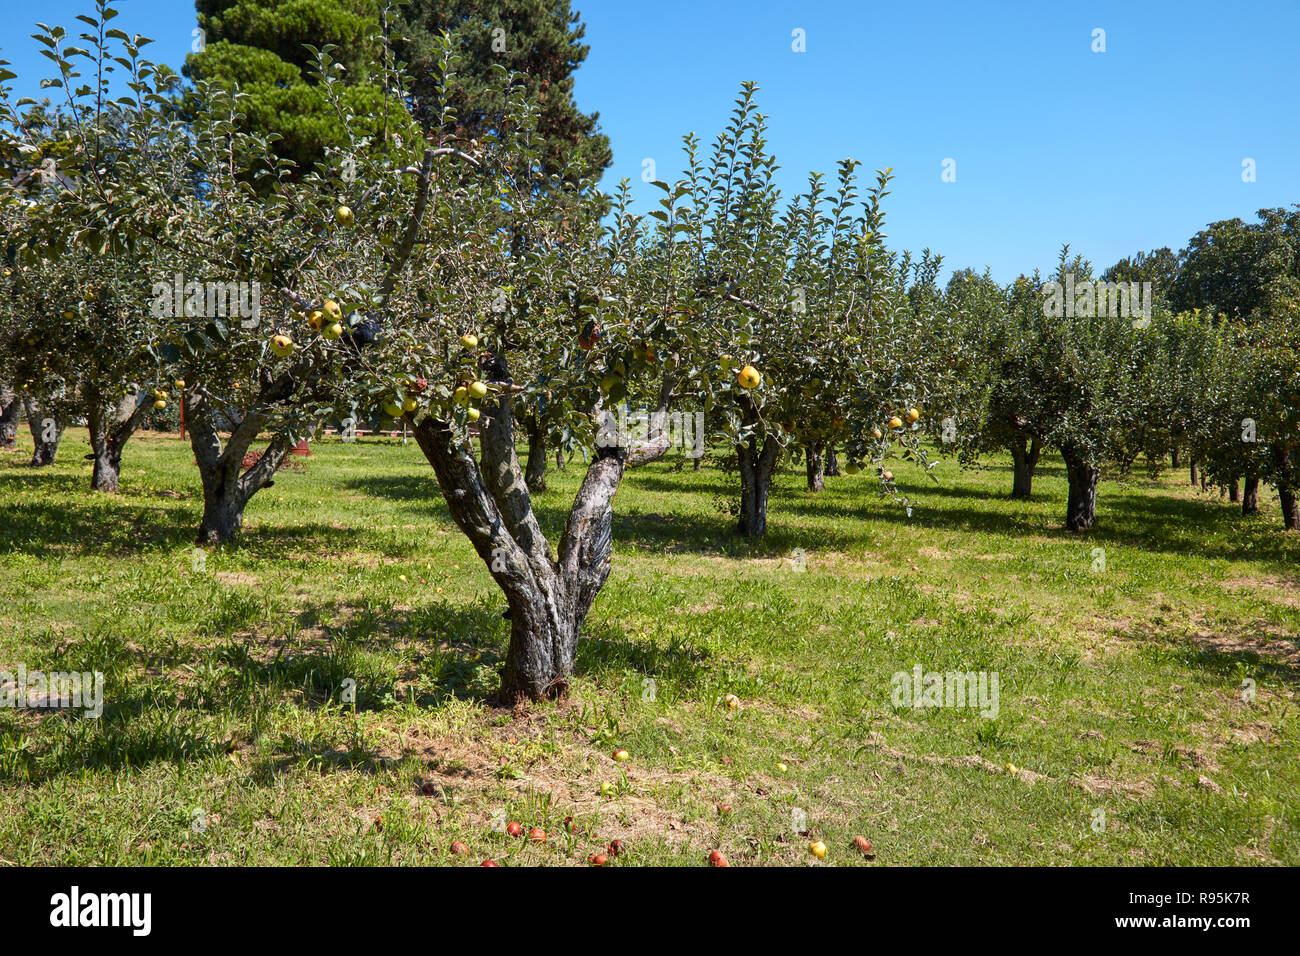 Meli orchard in una soleggiata giornata estiva, cielo blu chiaro Foto Stock